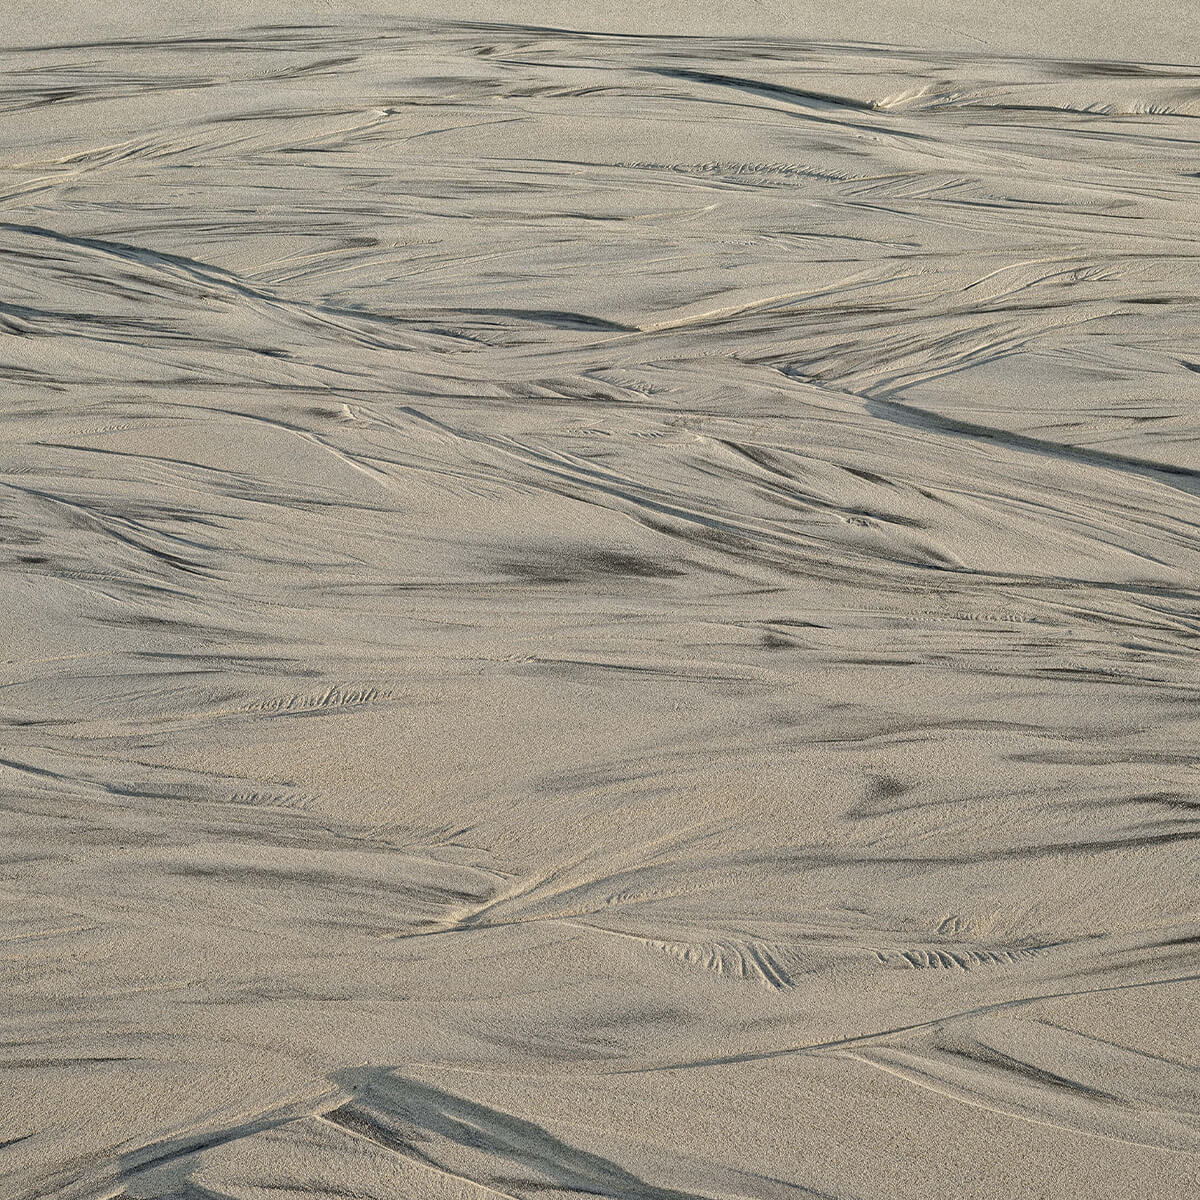 Glistening sand